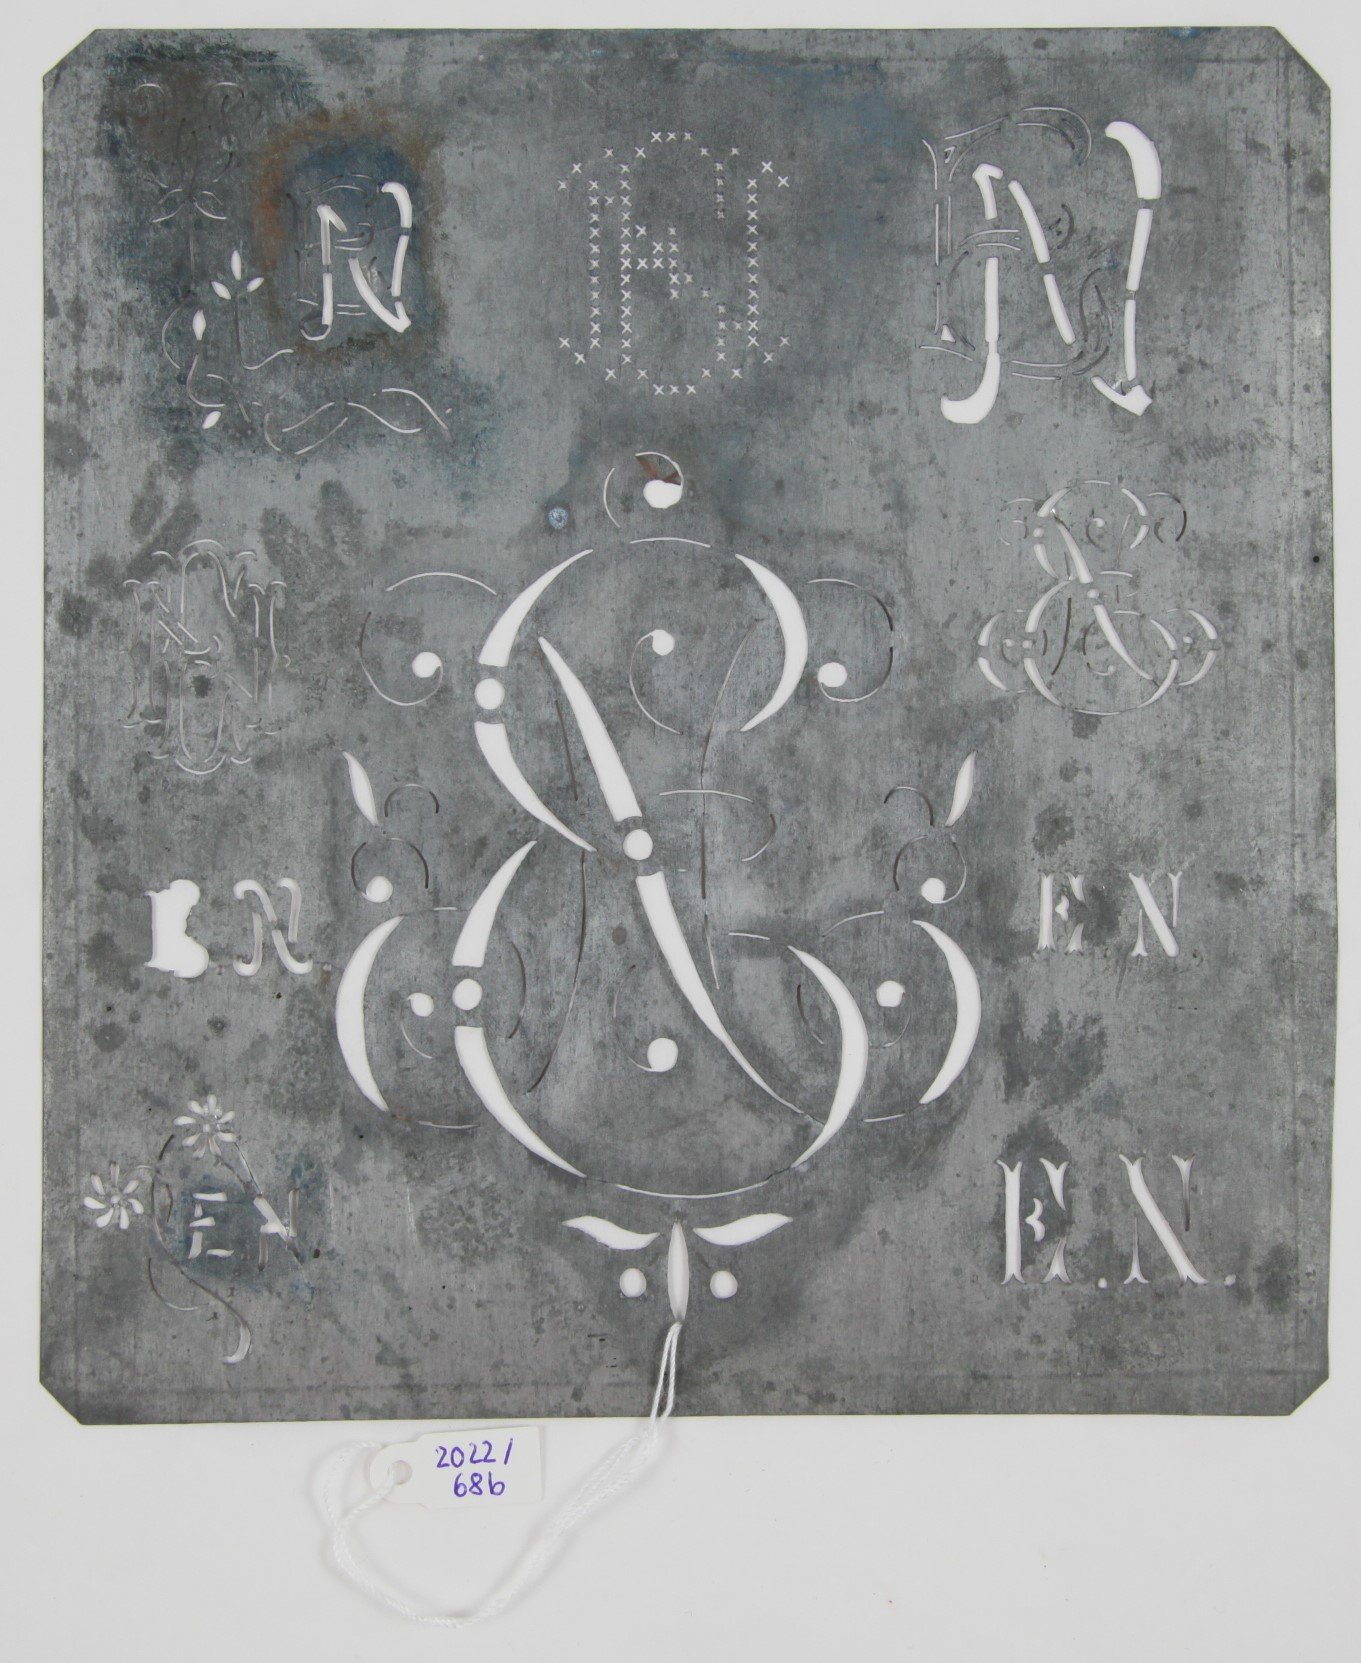 Monogrammschablone für Wäschestickerei (Hellweg-Museum Unna CC BY-NC-SA)